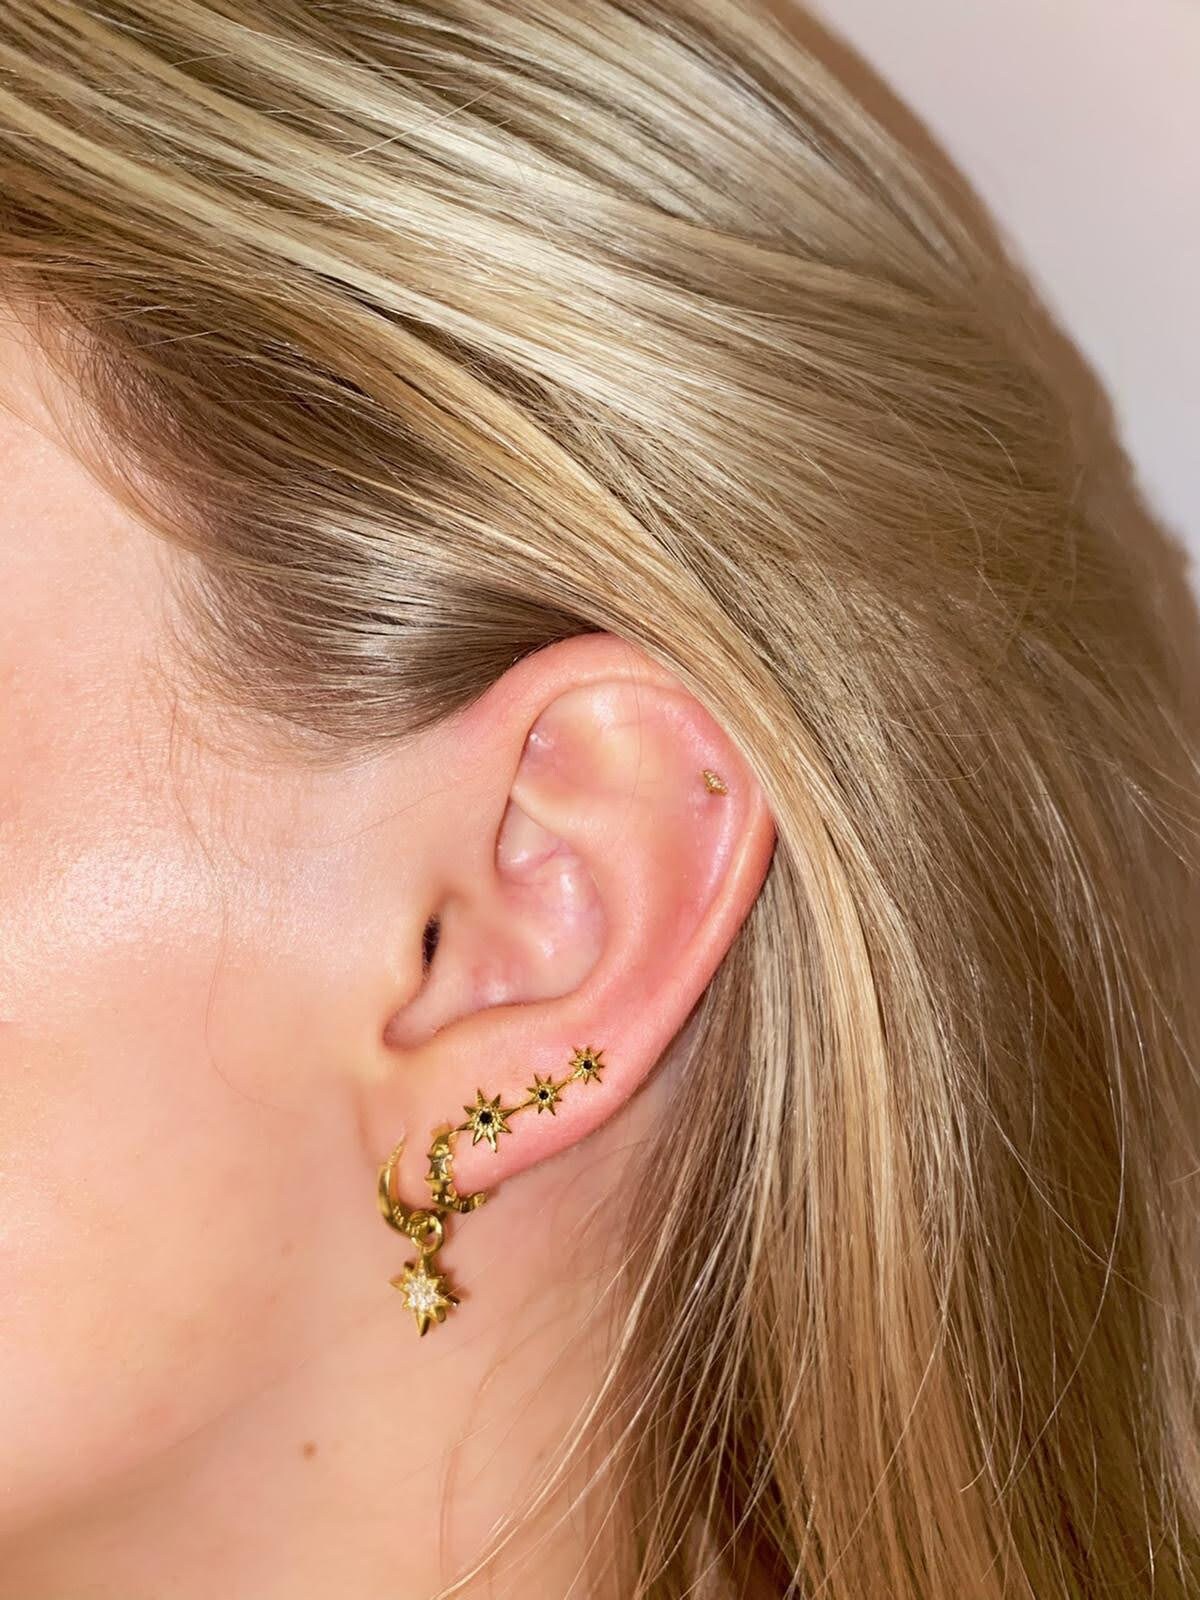 Starburst Ear Crawler Earrings - Star Crawler Earrings - Silver or Gold - Three Star Earrings - Star Trio Earrings